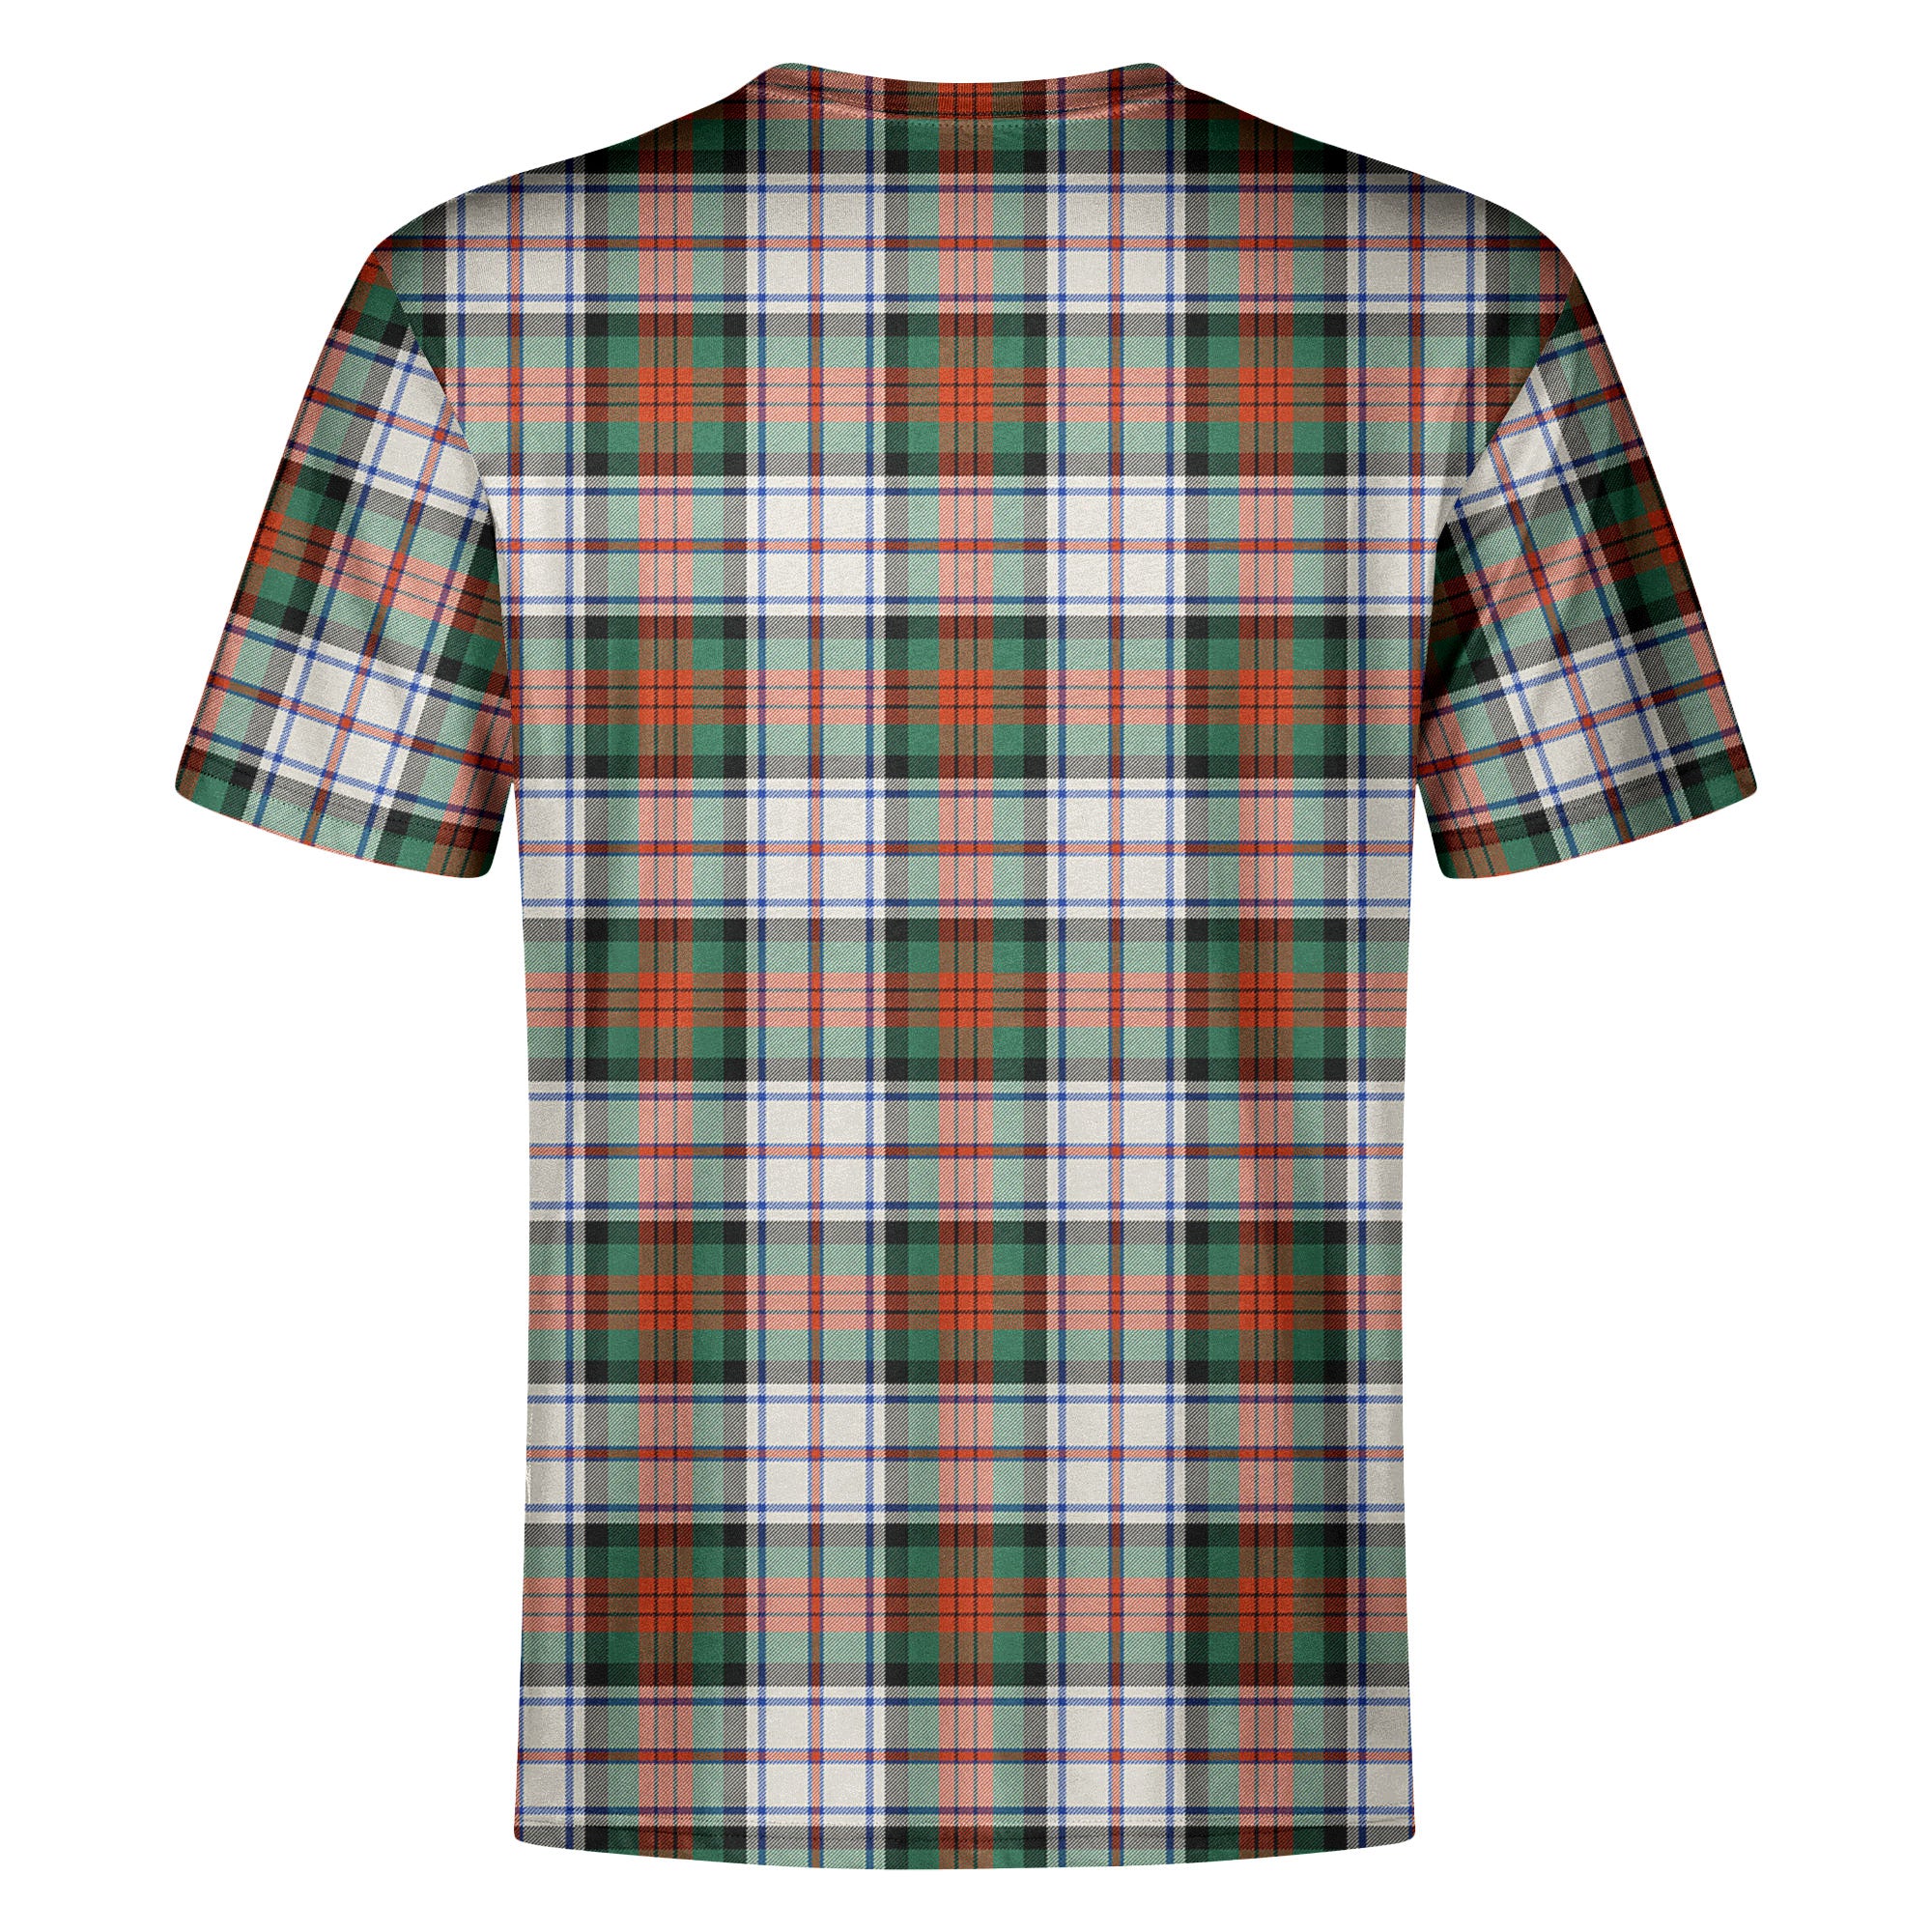 MacDuff Dress Ancient Tartan Crest T-shirt